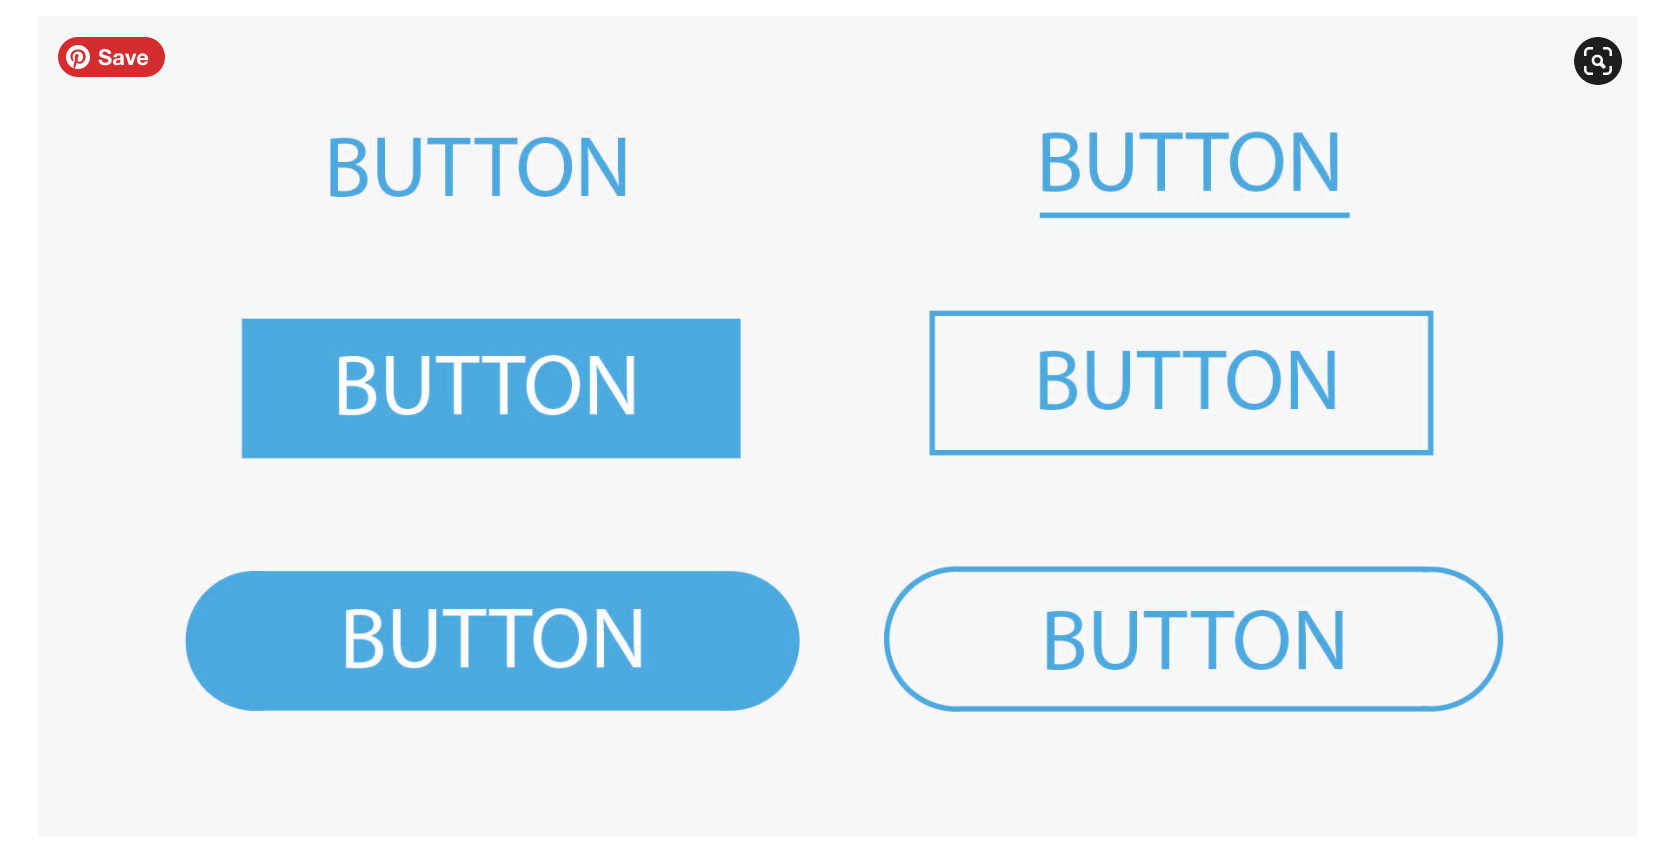 CTA - Call To Action Button designs